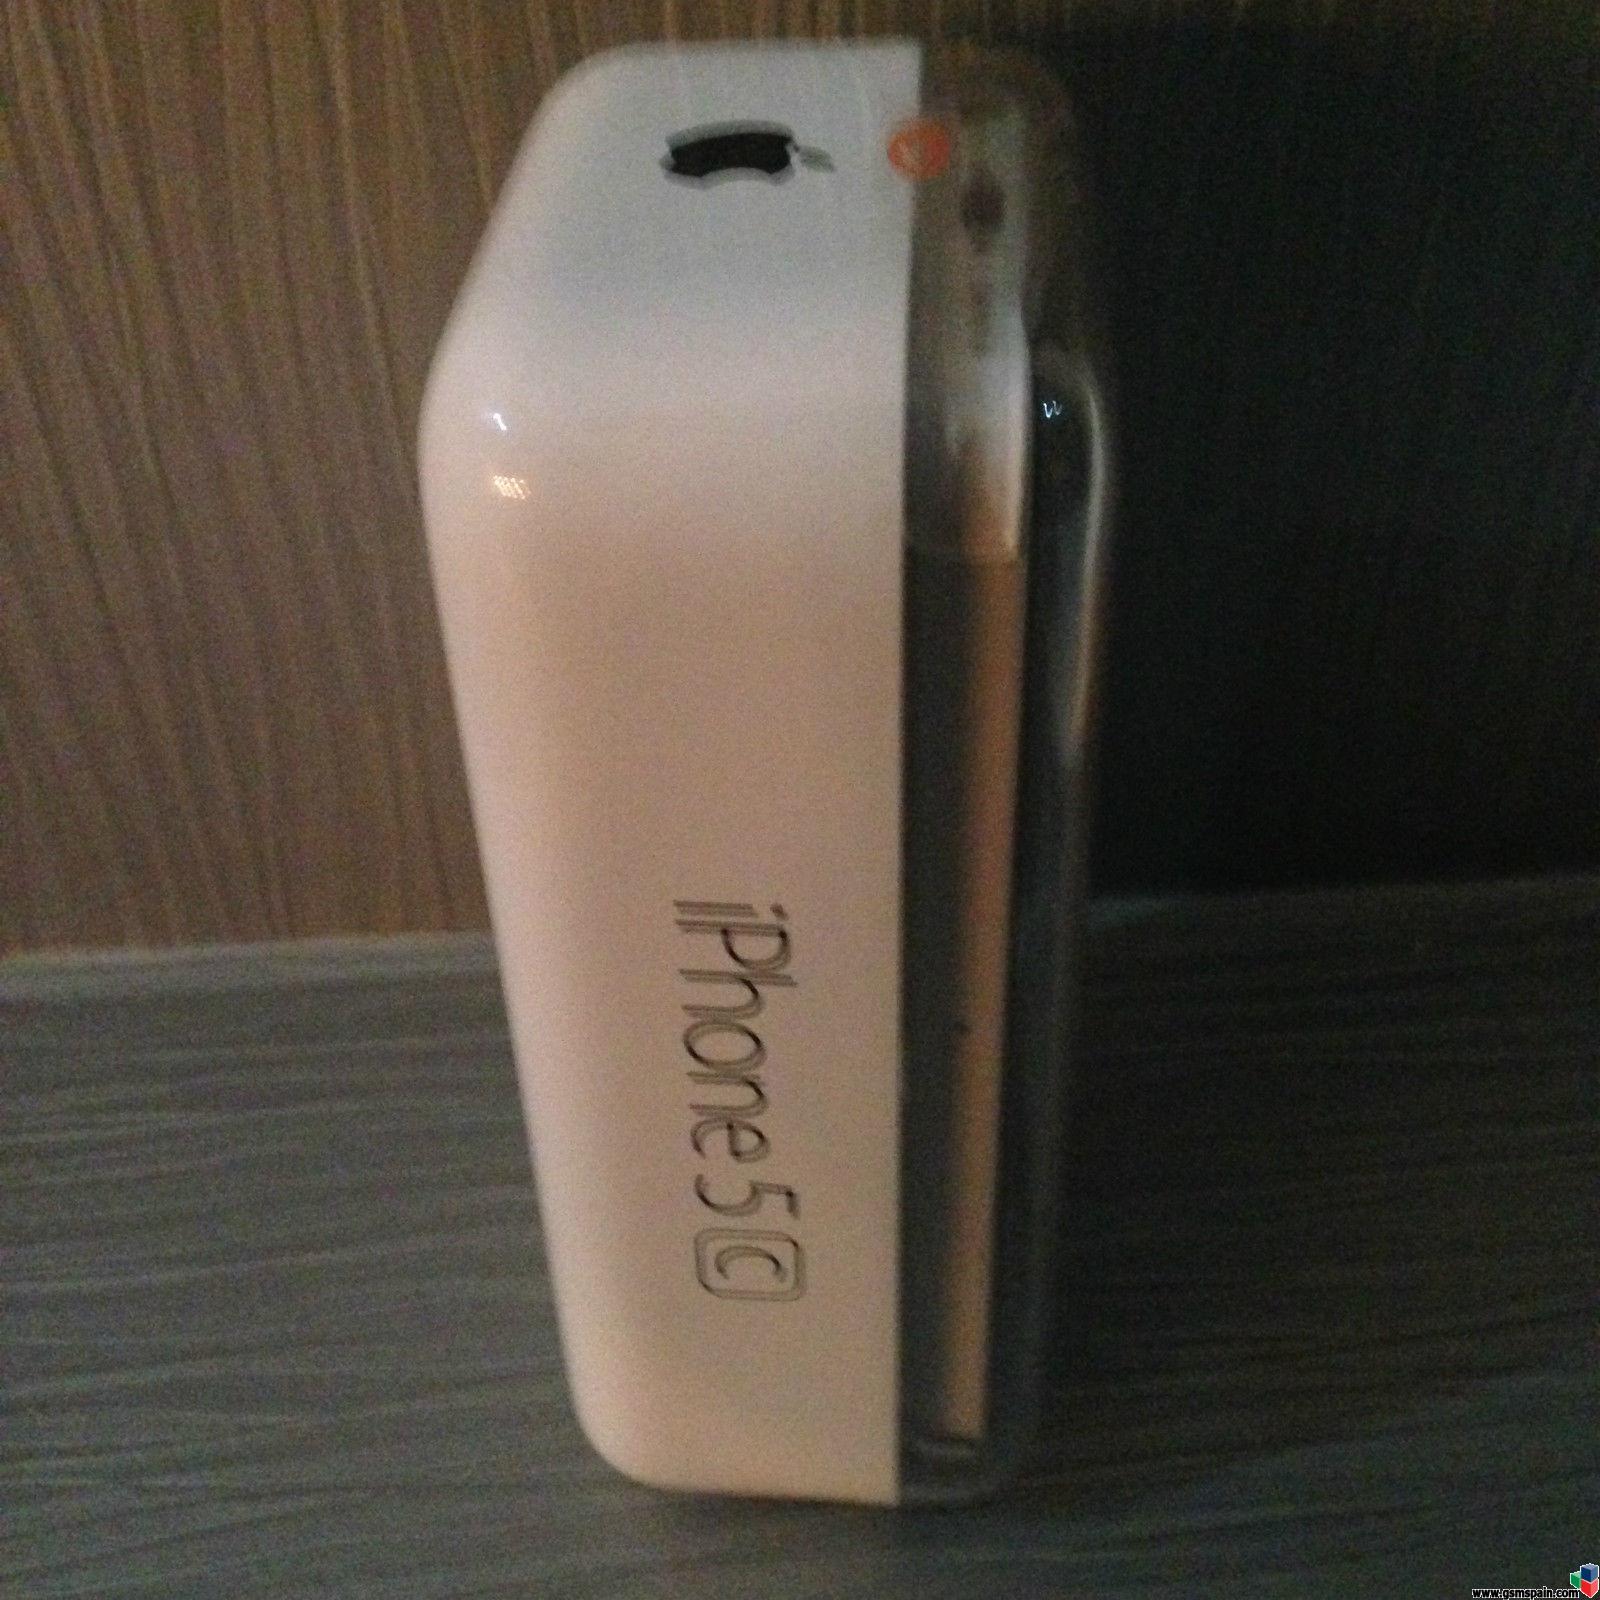 [VENDO] iPhone 5C Blanco 16GB Precintado de Vodafone (pero liberado)